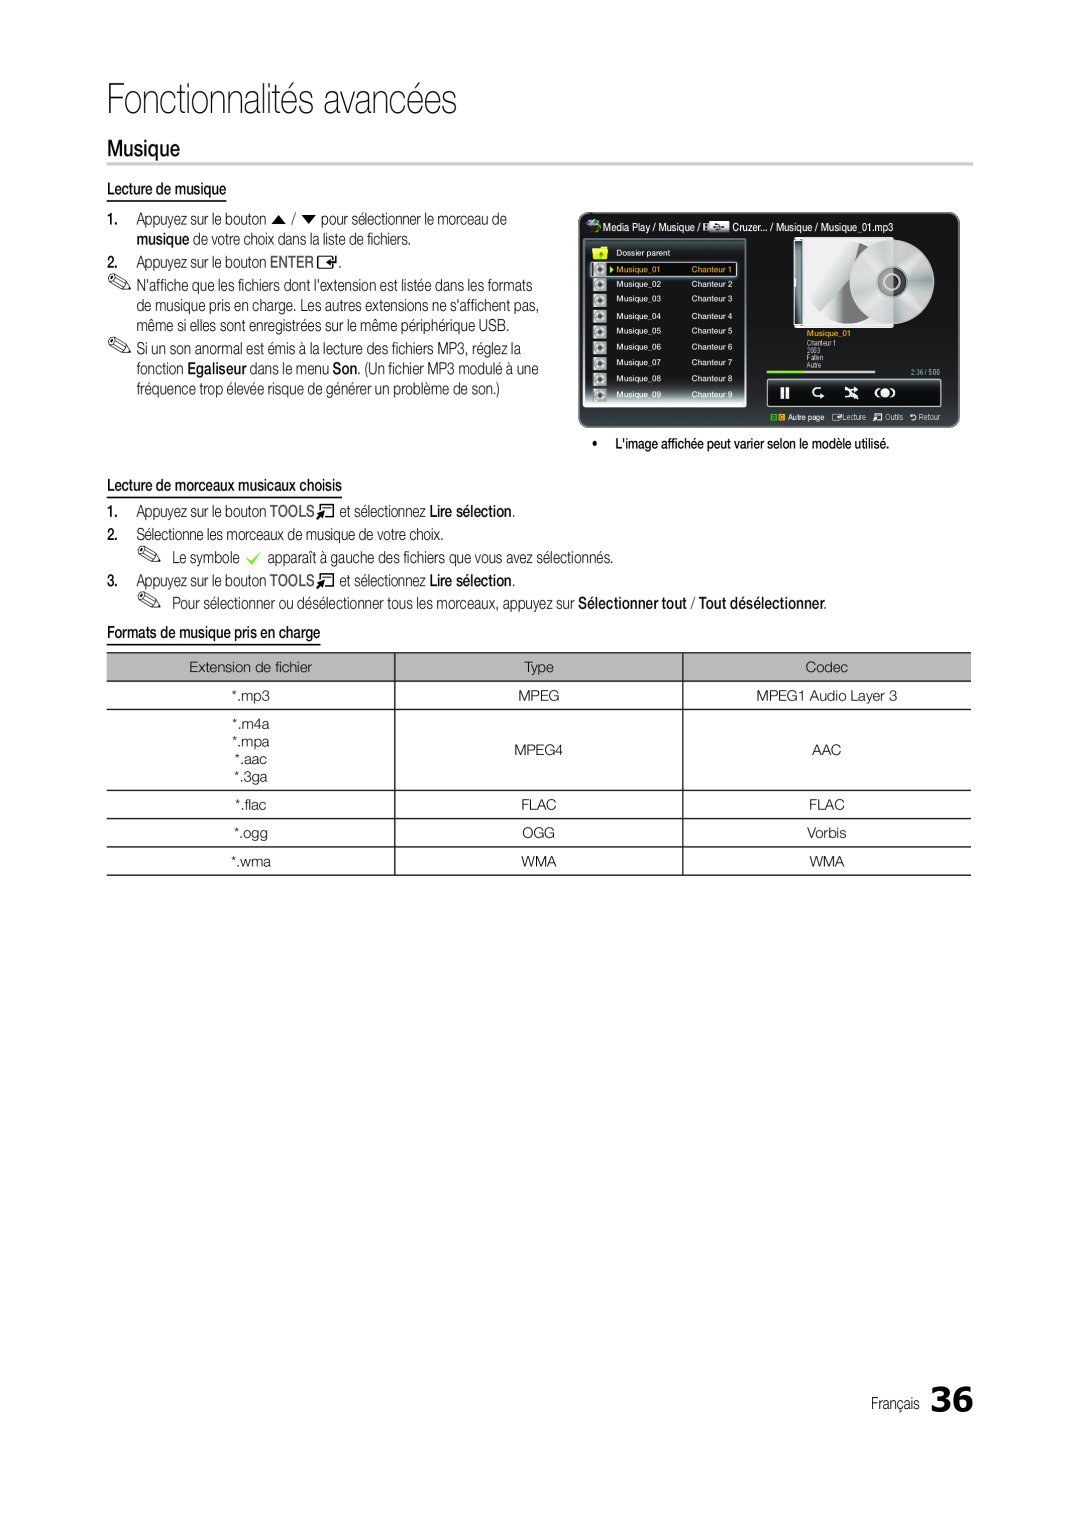 Samsung LT19C300EW/EN manual Musique, Fonctionnalités avancées, Limage affichée peut varier selon le modèle utilisé 